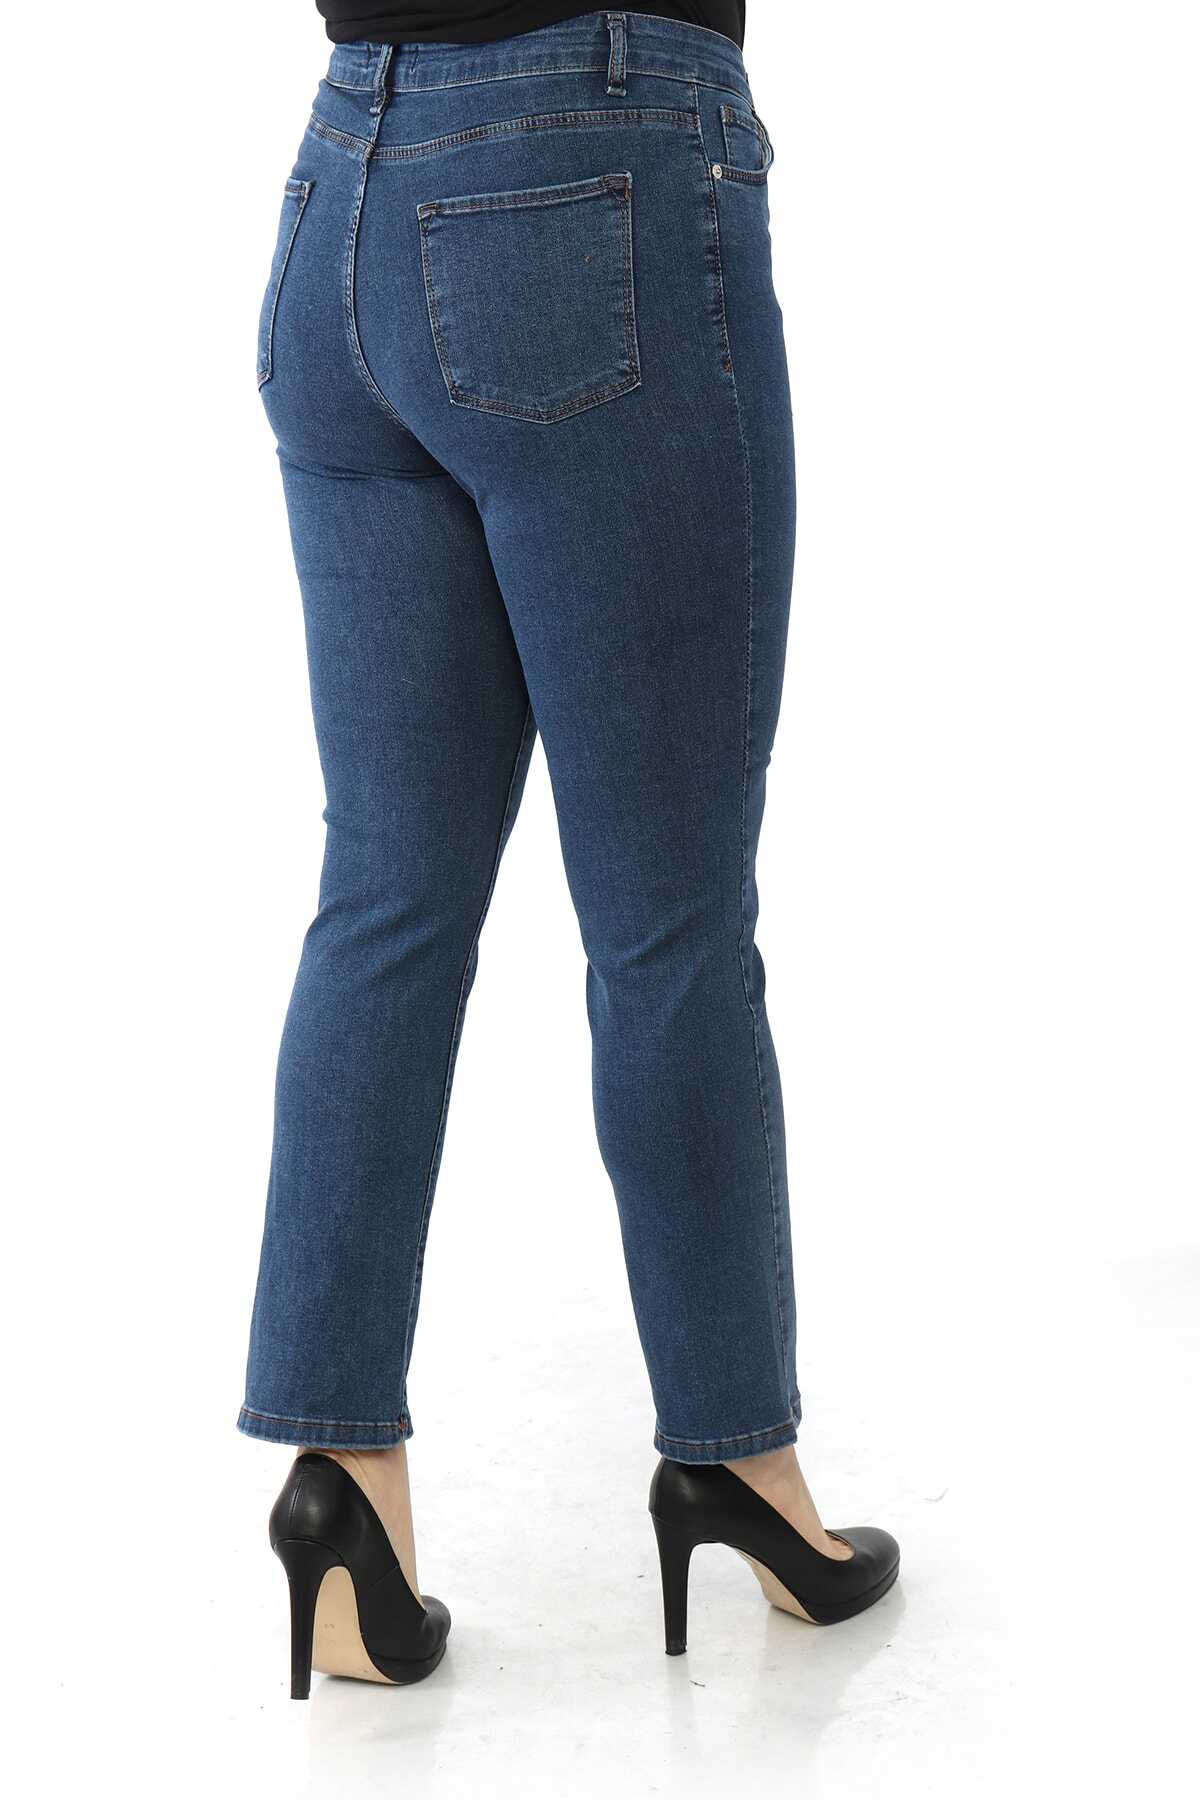 شلوار جین راسته فاق بلند سایز بزرگ زنانه آبی تیره برند Heves Giyim